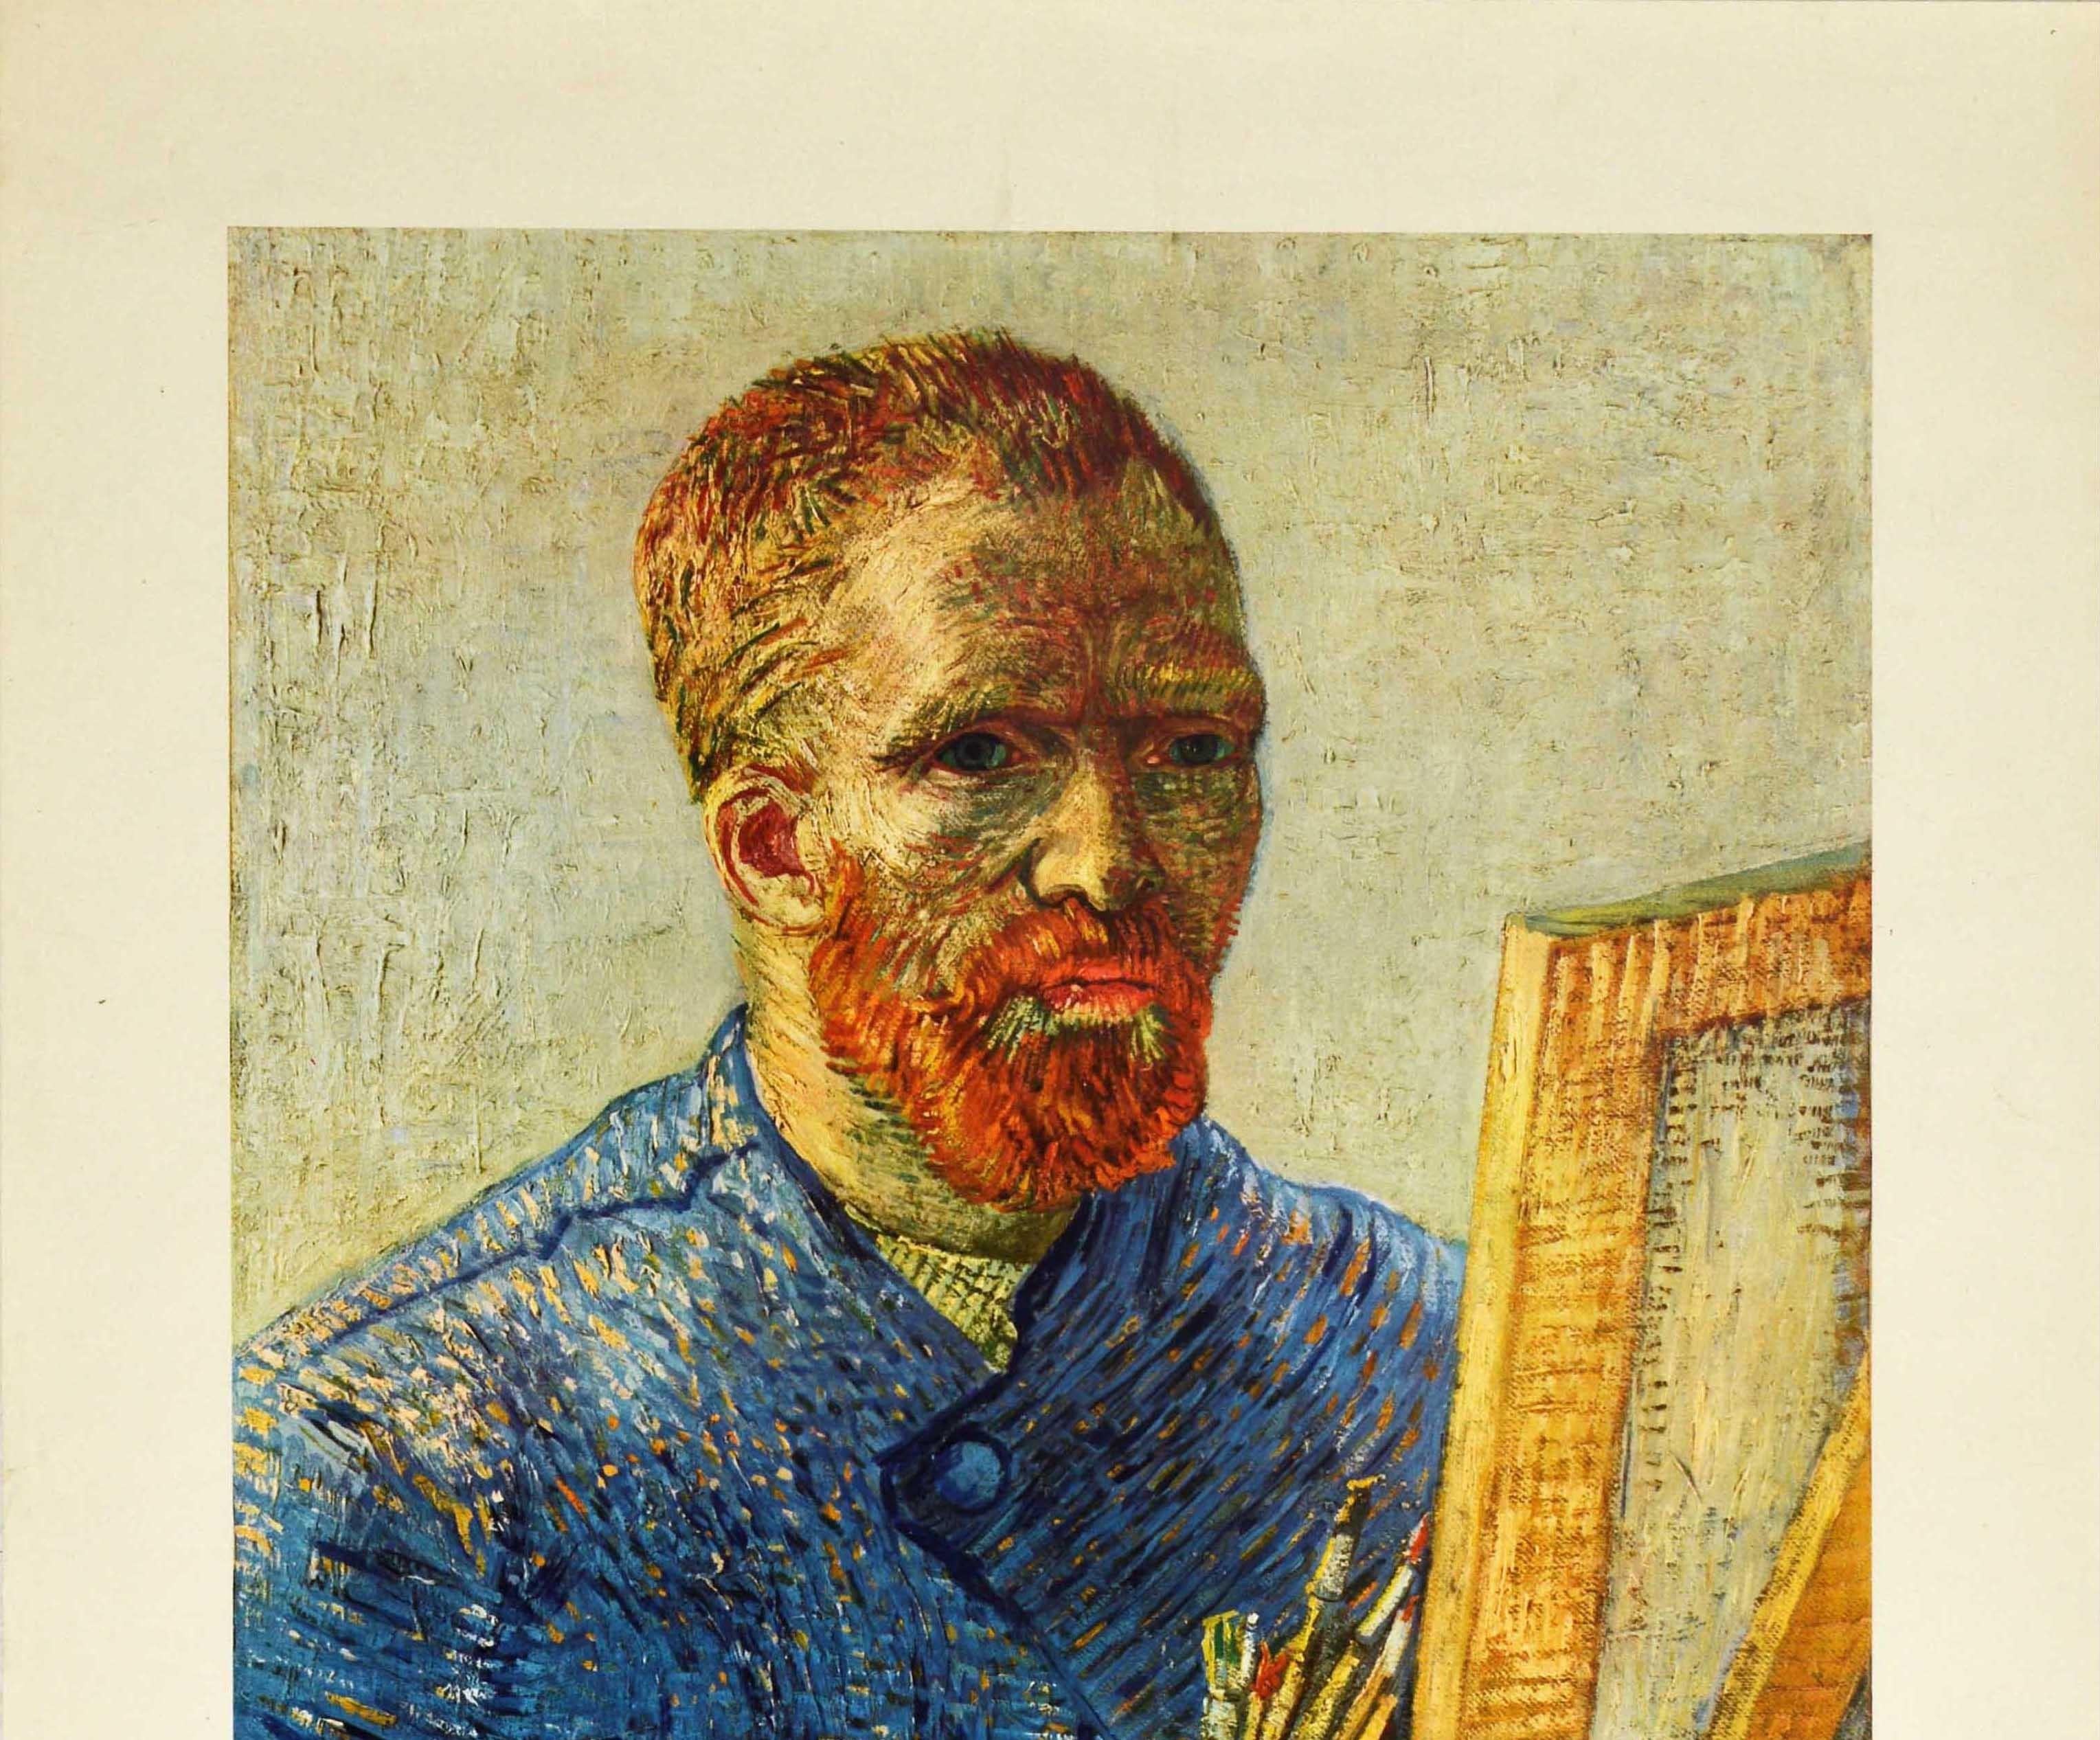 Original Vintage Art Exhibition Poster Vincent Van Gogh Self Portrait Painting - Print by Vincent van Gogh